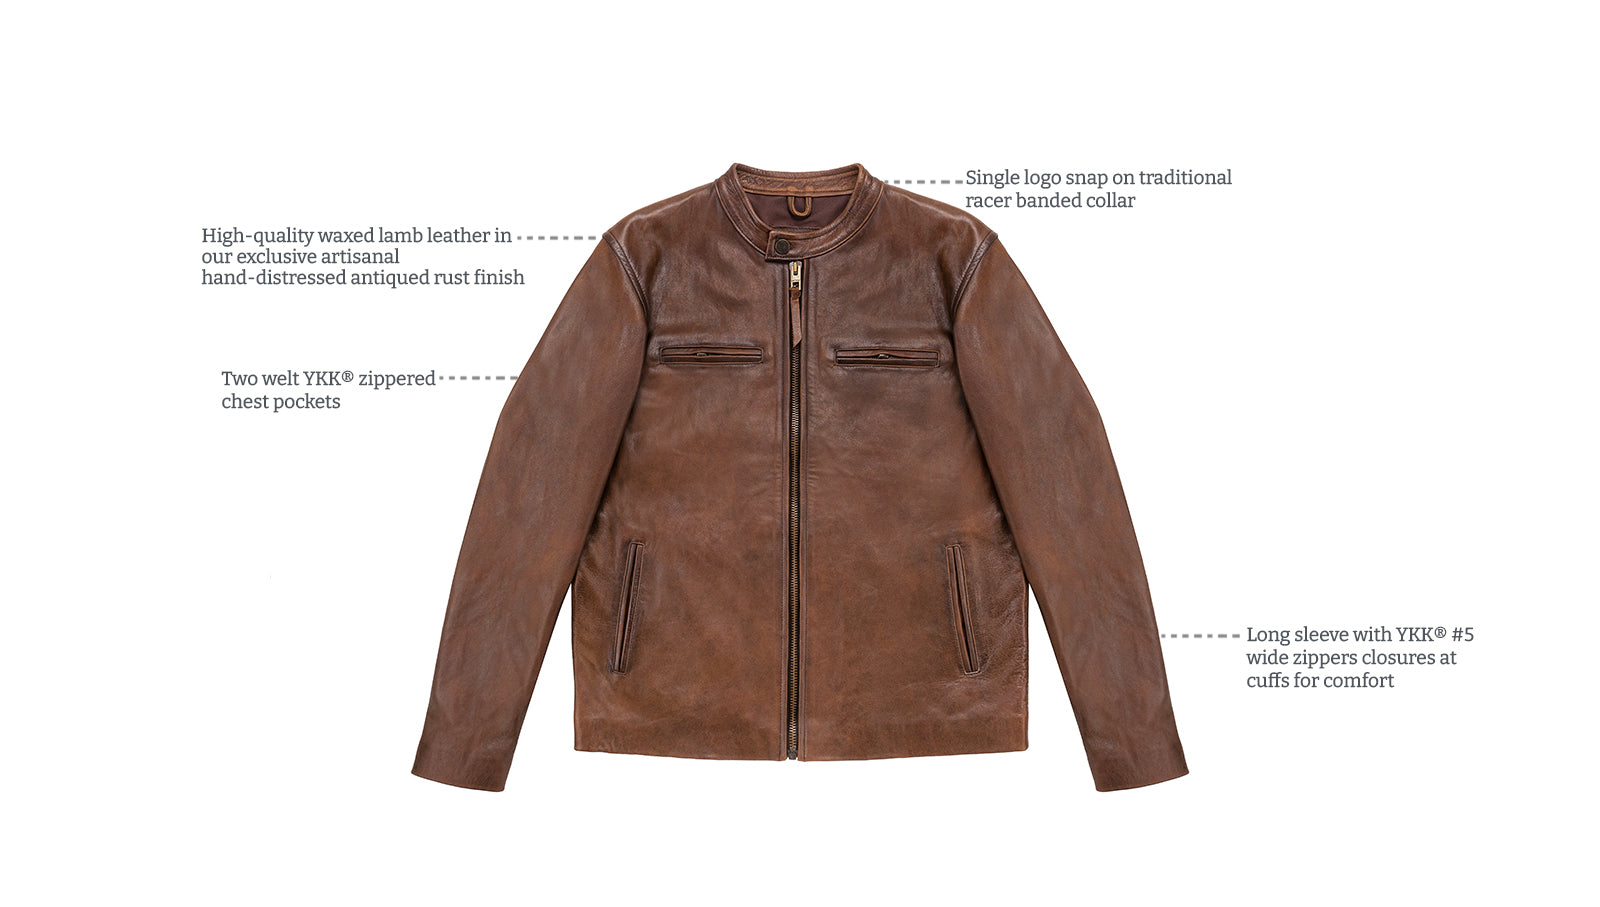 Details of Wheeler peak racer leather jacket antiqued rust